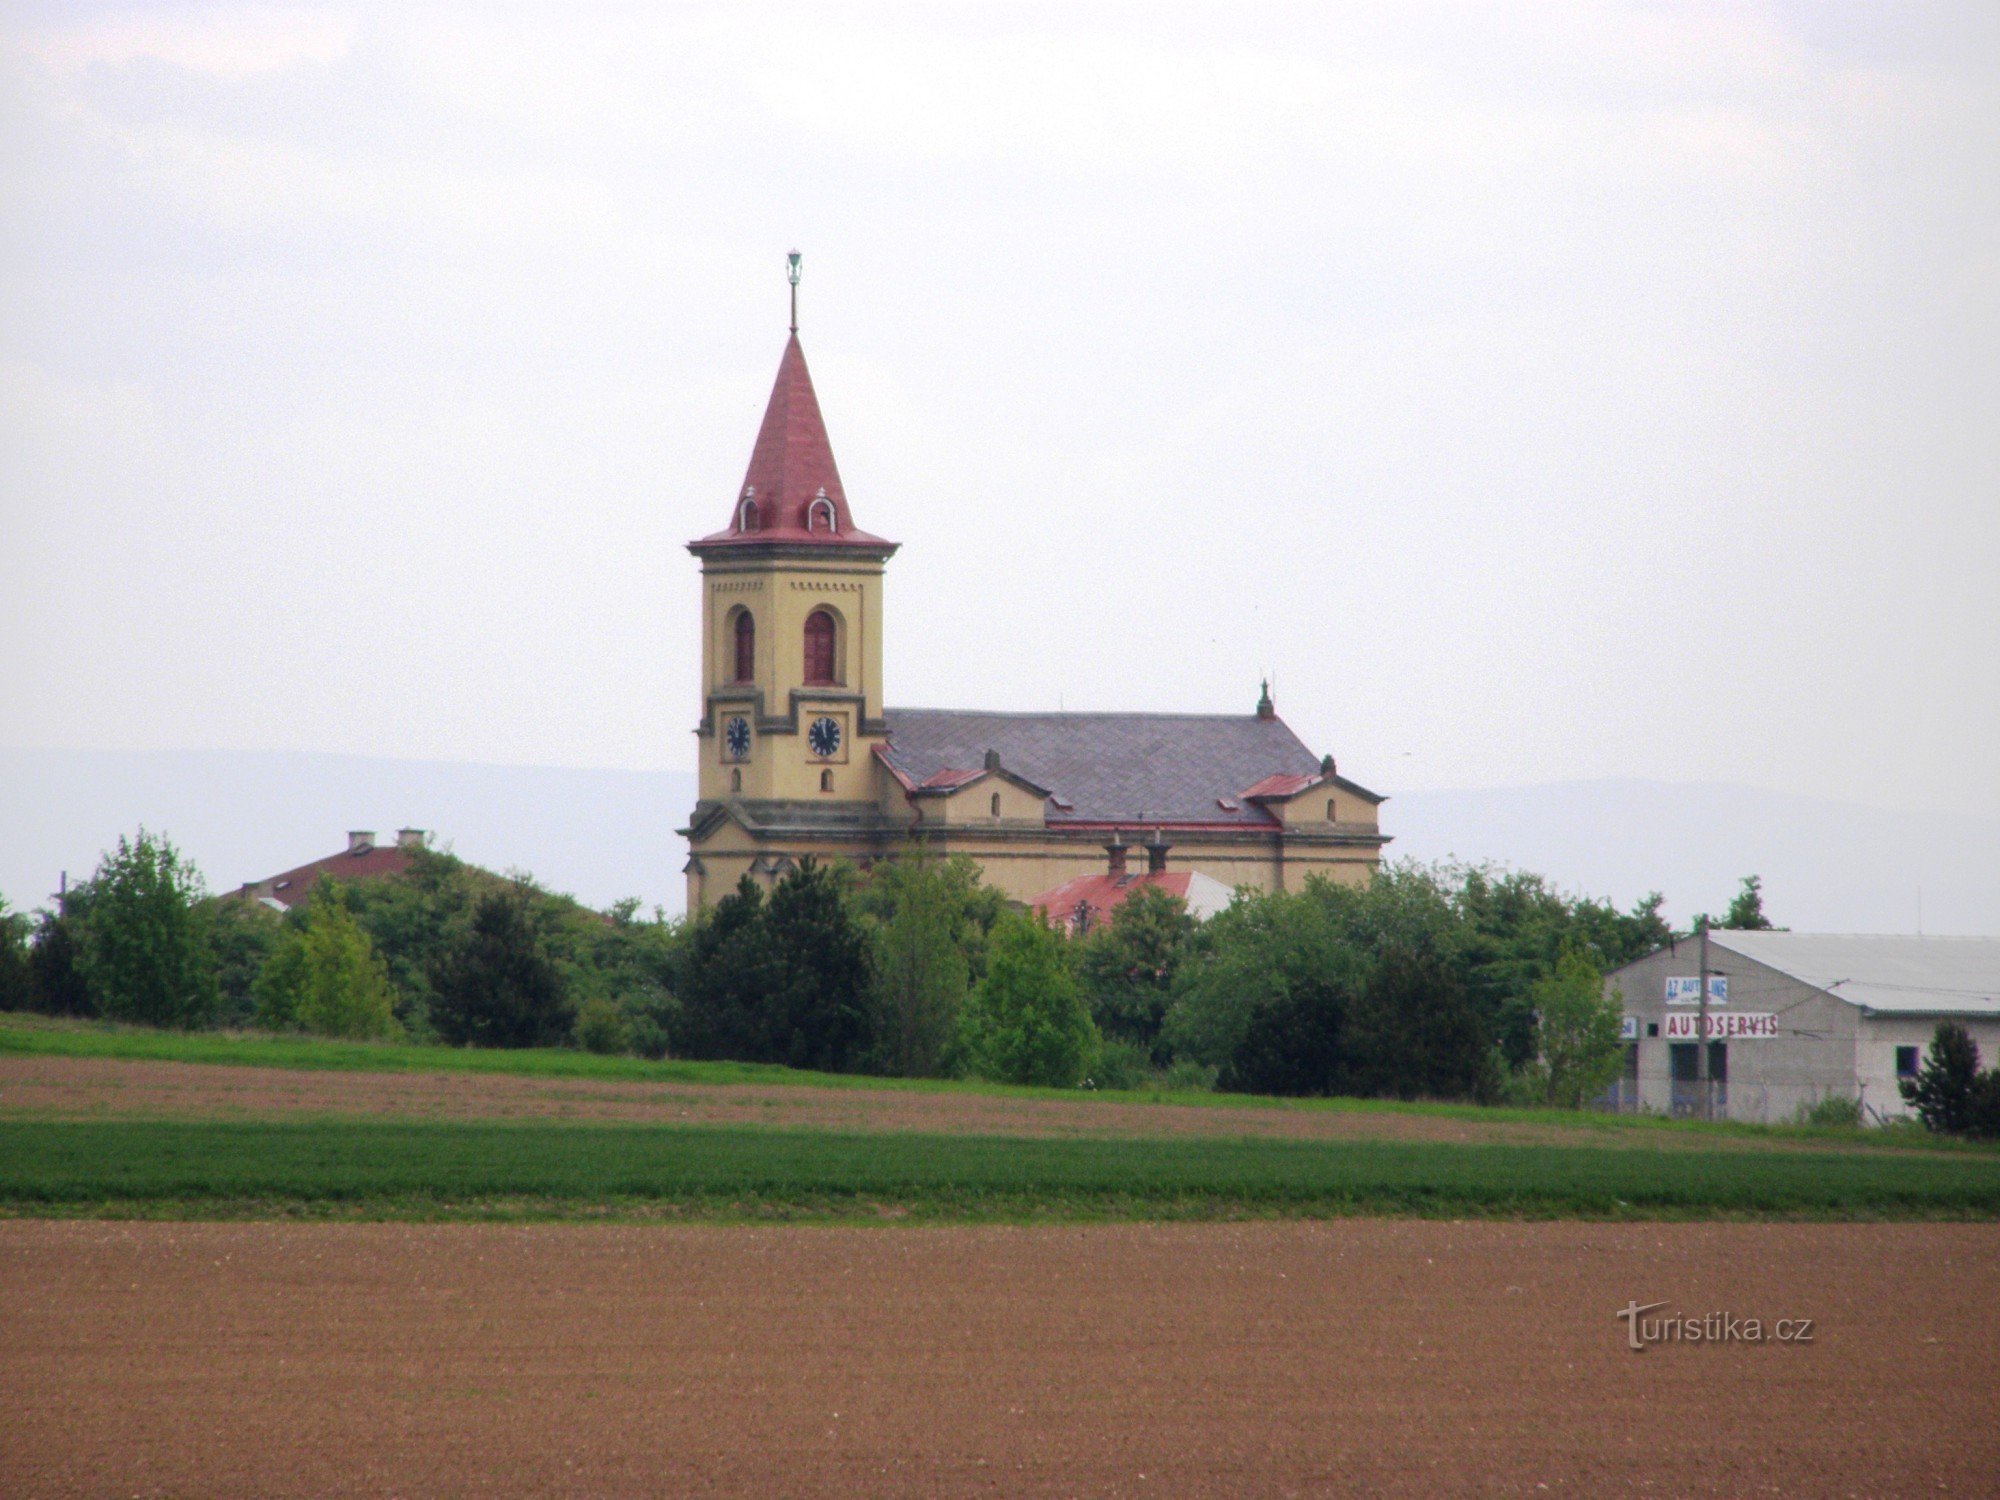 Semonice - Biserica Evanghelică a Fraților Cehi